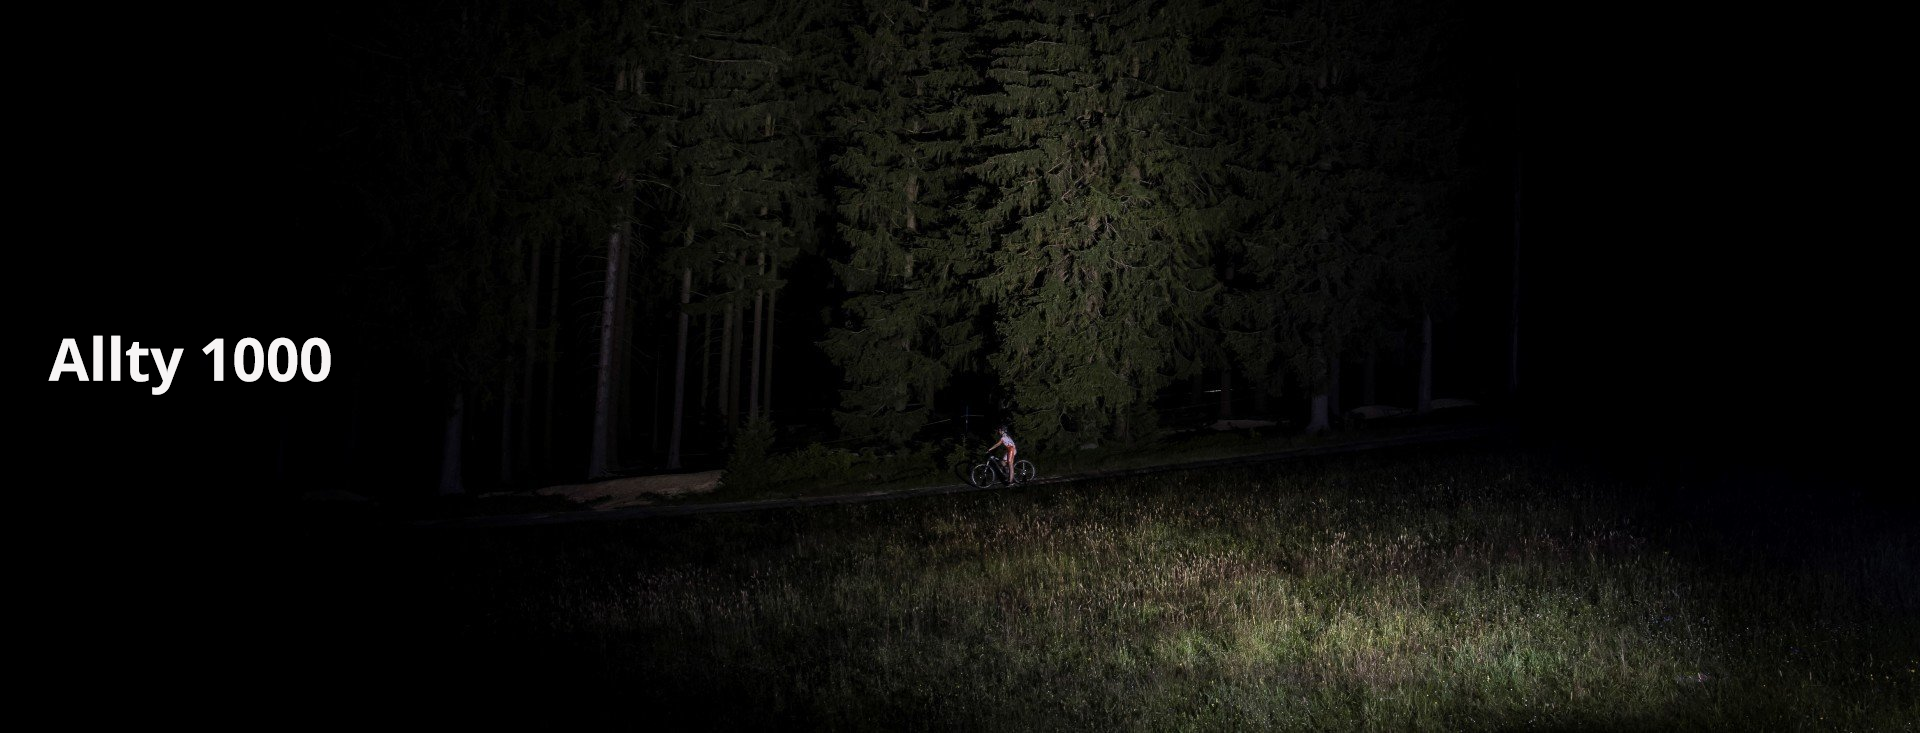 Magicshine LED Stirnlampe Allty 1000 mit Fahrradfahrer auf Wiese vor Wald und starkem LED Lichtkegel